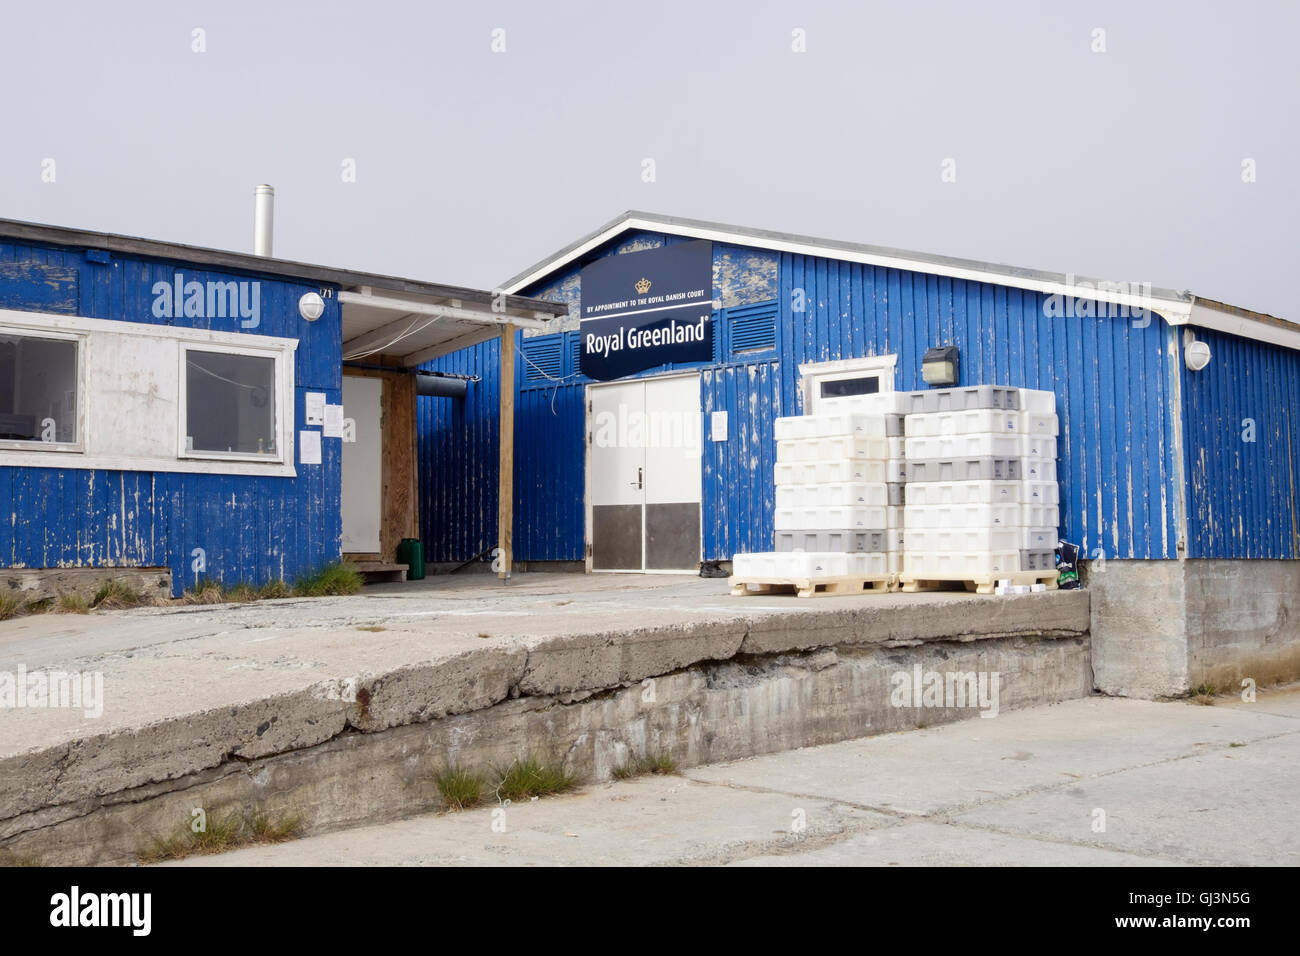 Royal Greenland fish factory en bâtiment bleu par le port. Itilleq, Qeqqata, l'ouest du Groenland. Banque D'Images